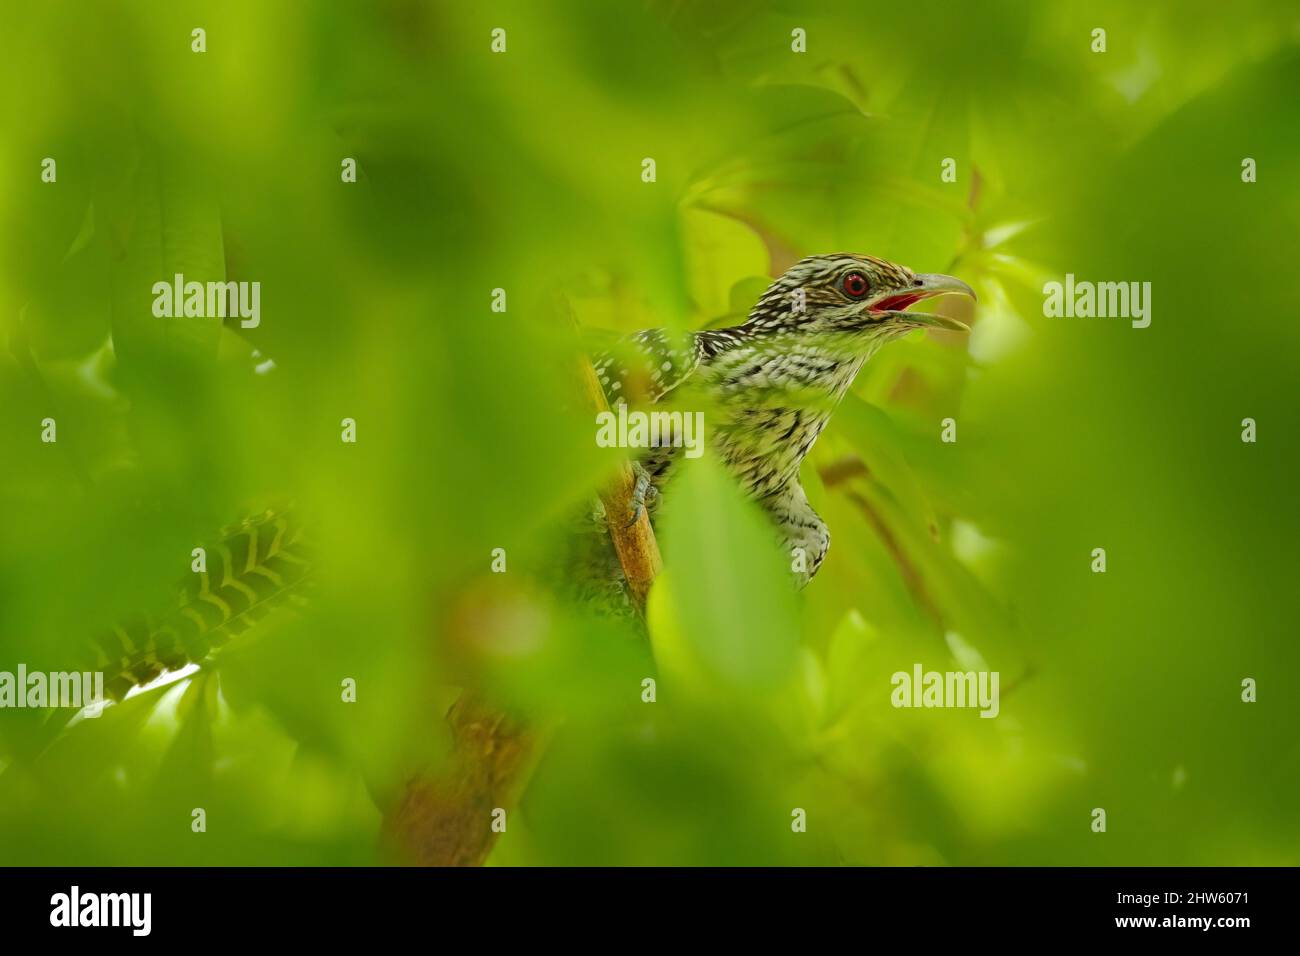 Asiatischer Koel, Eudynamys scolopaceus, Vogel versteckt in grüner Waldvegetation. Koel-Kuckuck im Naturlebensraum, Ranthambore NP, Indien, Asien. Wildtierszene Stockfoto